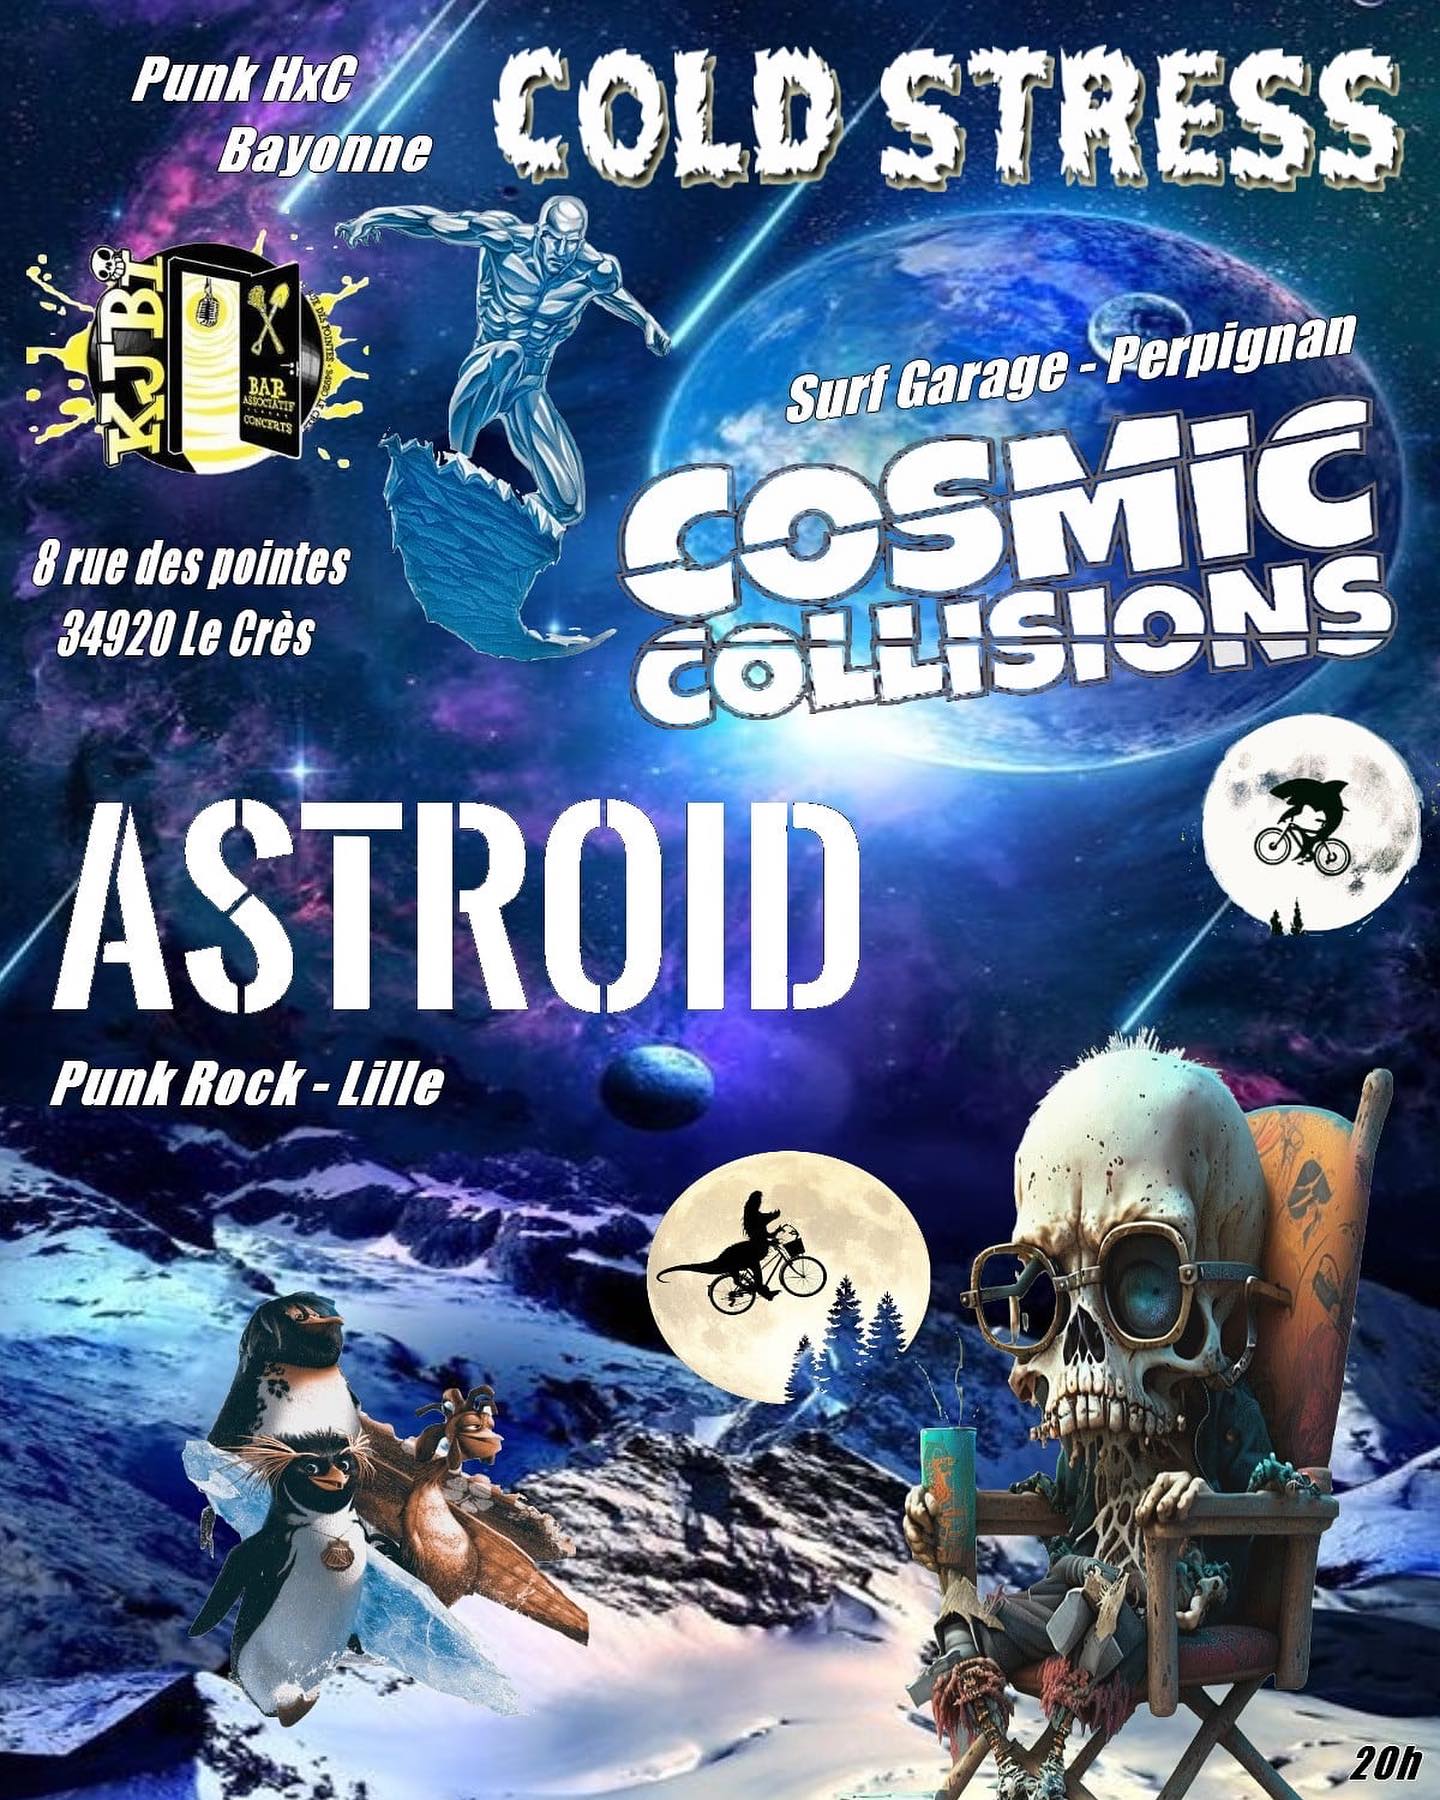 Cosmic Collisions + Astroïd + Cold Stress at Kjbi